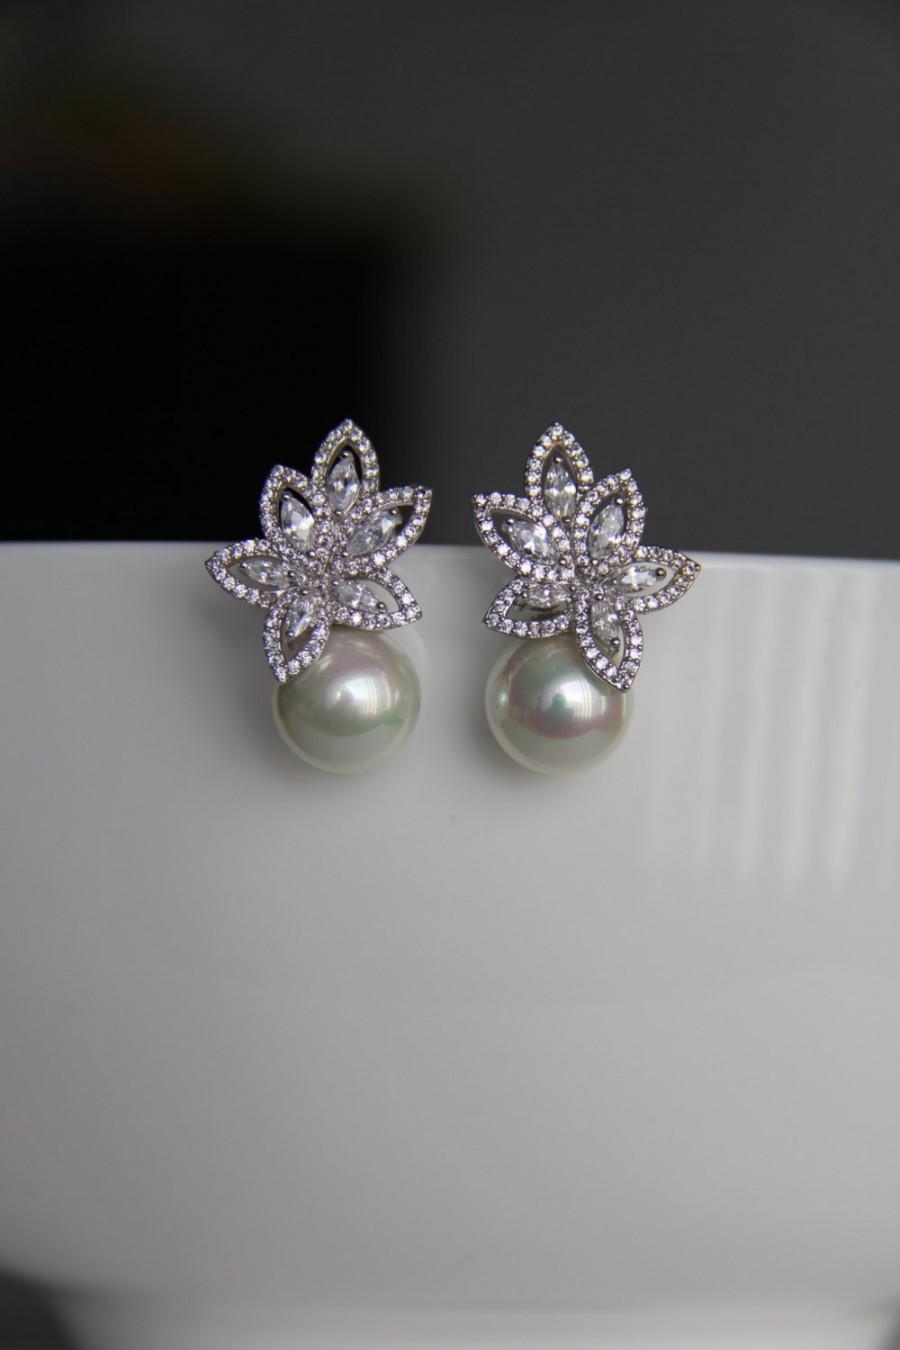 Свадьба - Bridal earrings, cz earrings, wedding earrings, bridesmaid earrings, bridal jewelry, wedding jewelry, cz jewelry, dangley earrings